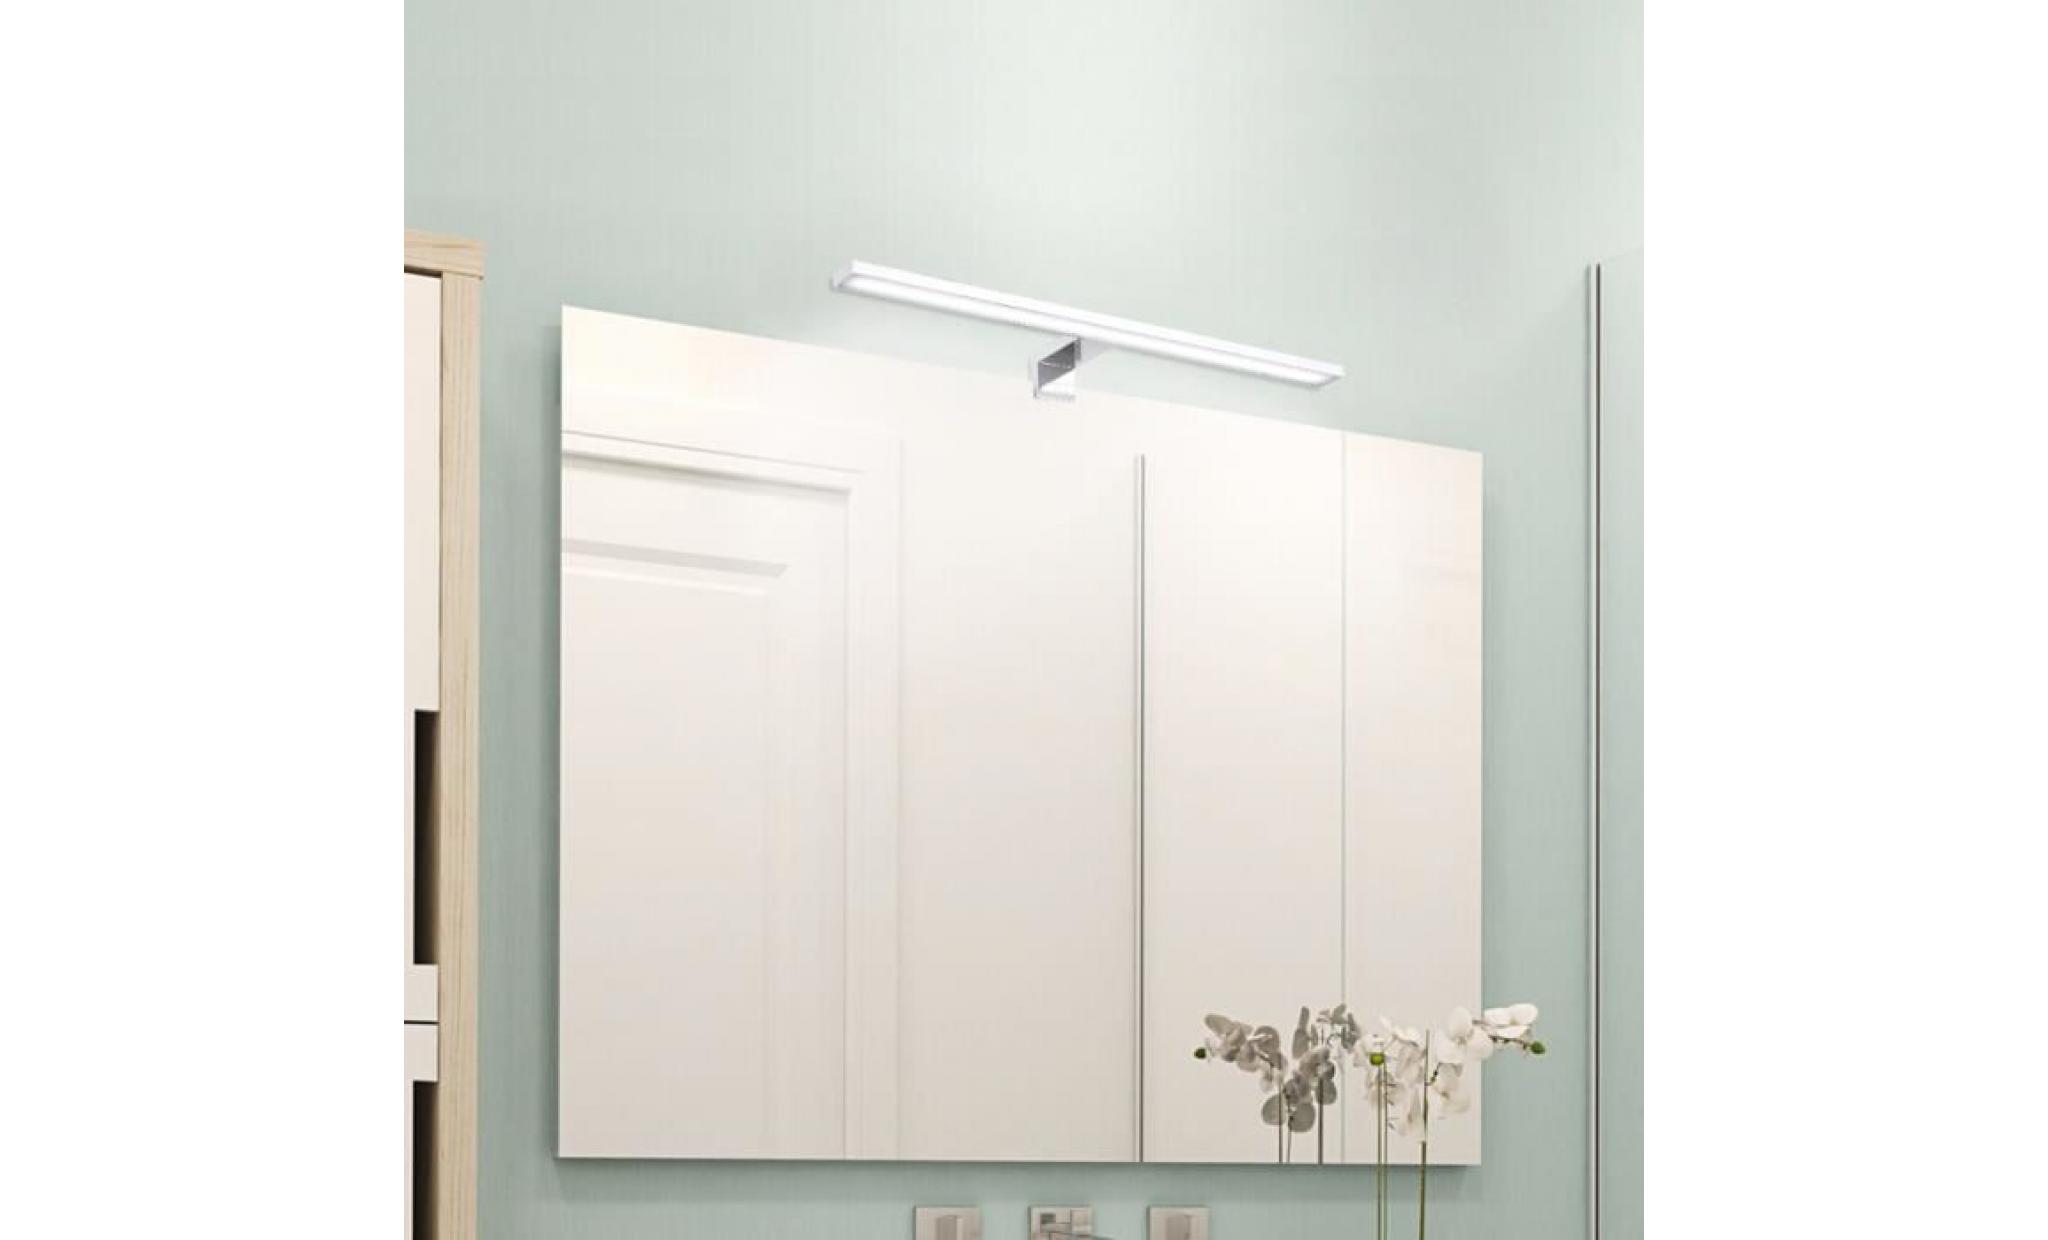 applique de miroir de salle de bain led 12w etanche lampe murale intérieur décoration lumière blanche design minimaliste moderne pas cher